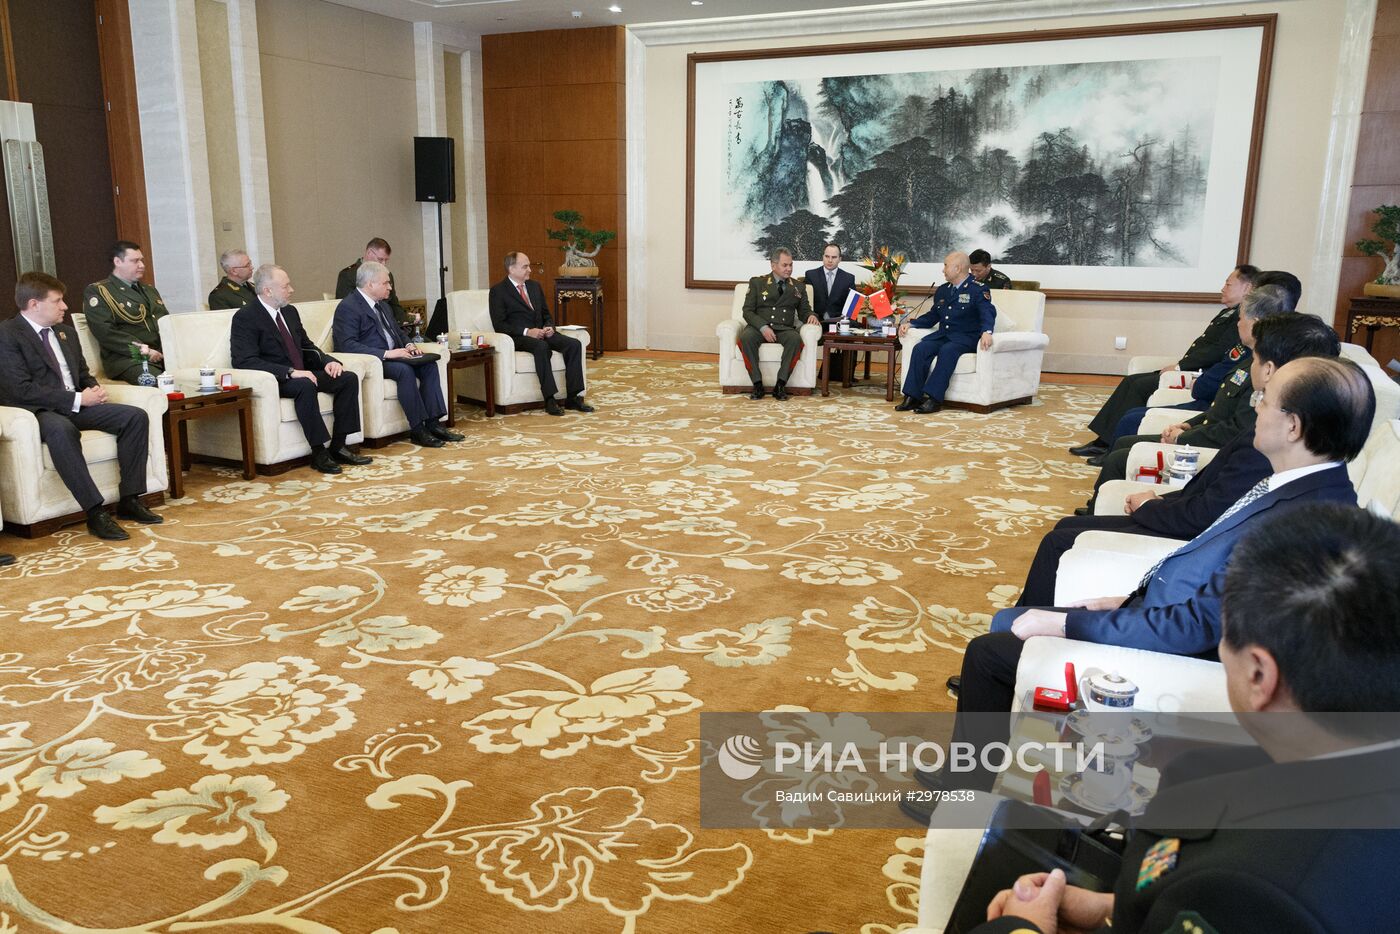 Официальный визит министра обороны РФ Сергея Шойгу в Китай